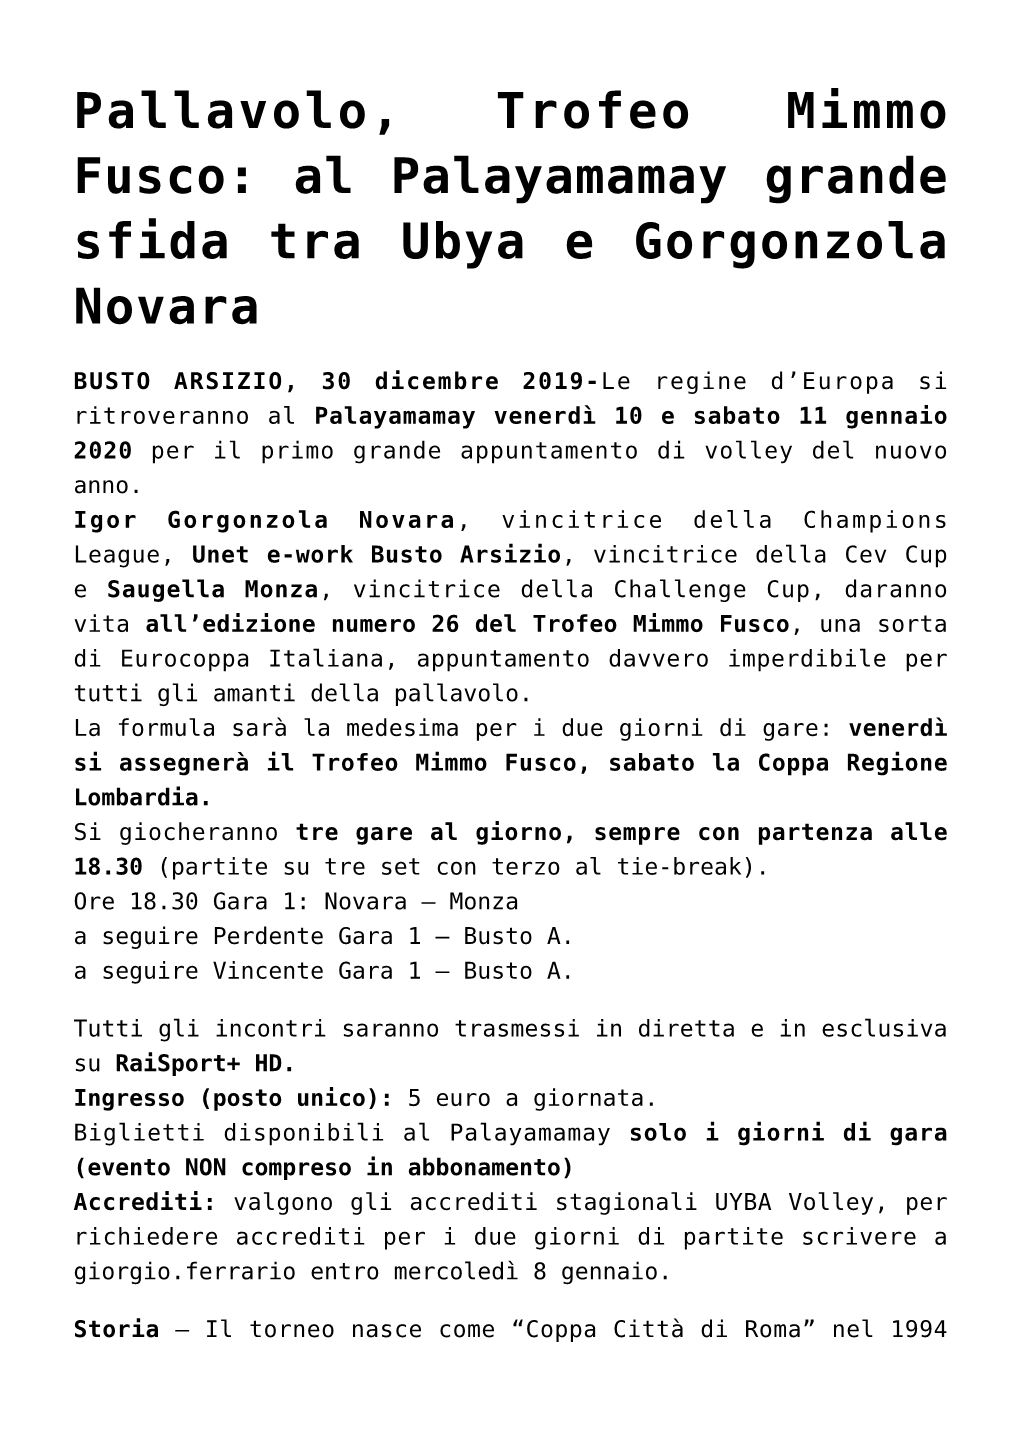 Pallavolo, Trofeo Mimmo Fusco: Al Palayamamay Grande Sfida Tra Ubya E Gorgonzola Novara